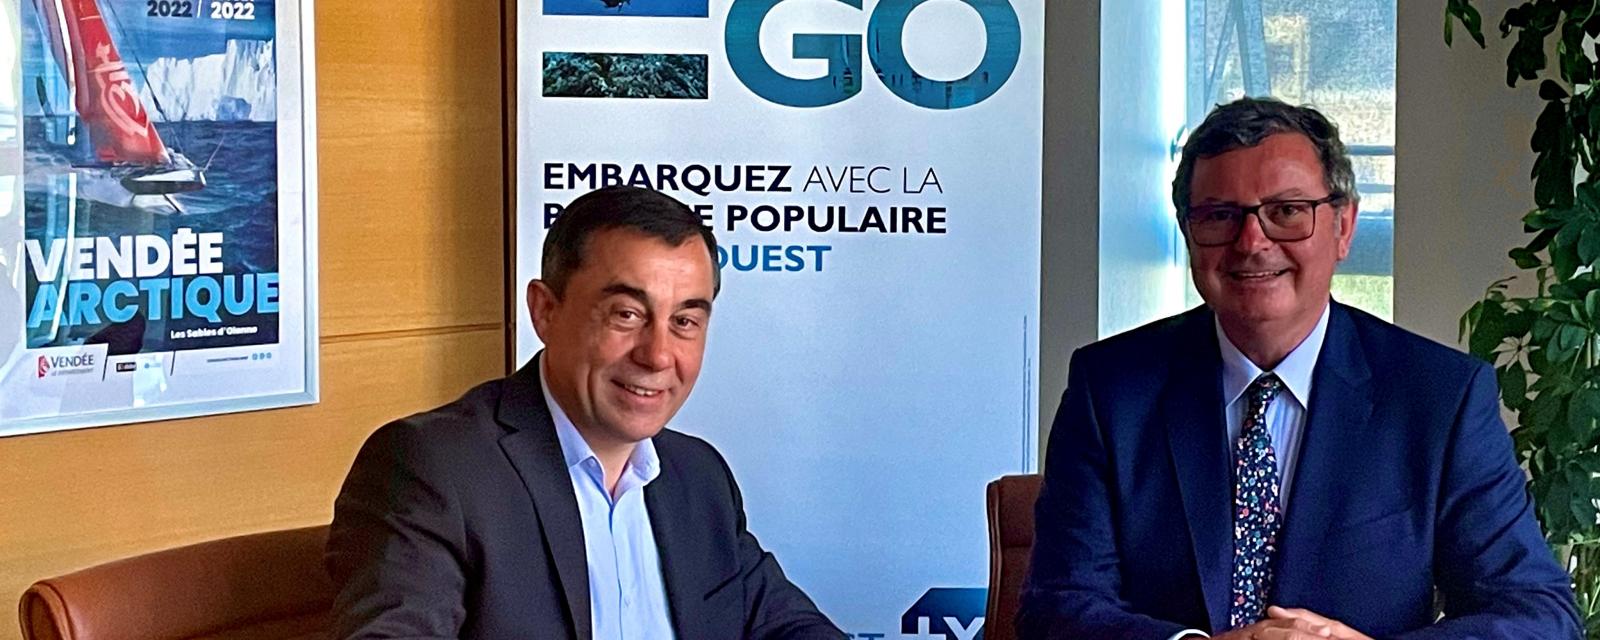 Alain Leboeuf, Président de la SAEM Vendée et Président du Département de la Vendée (à gauche) et Maurice Bourrigaud, Directeur Général de Banque Populaire Grand Ouest (à droite)